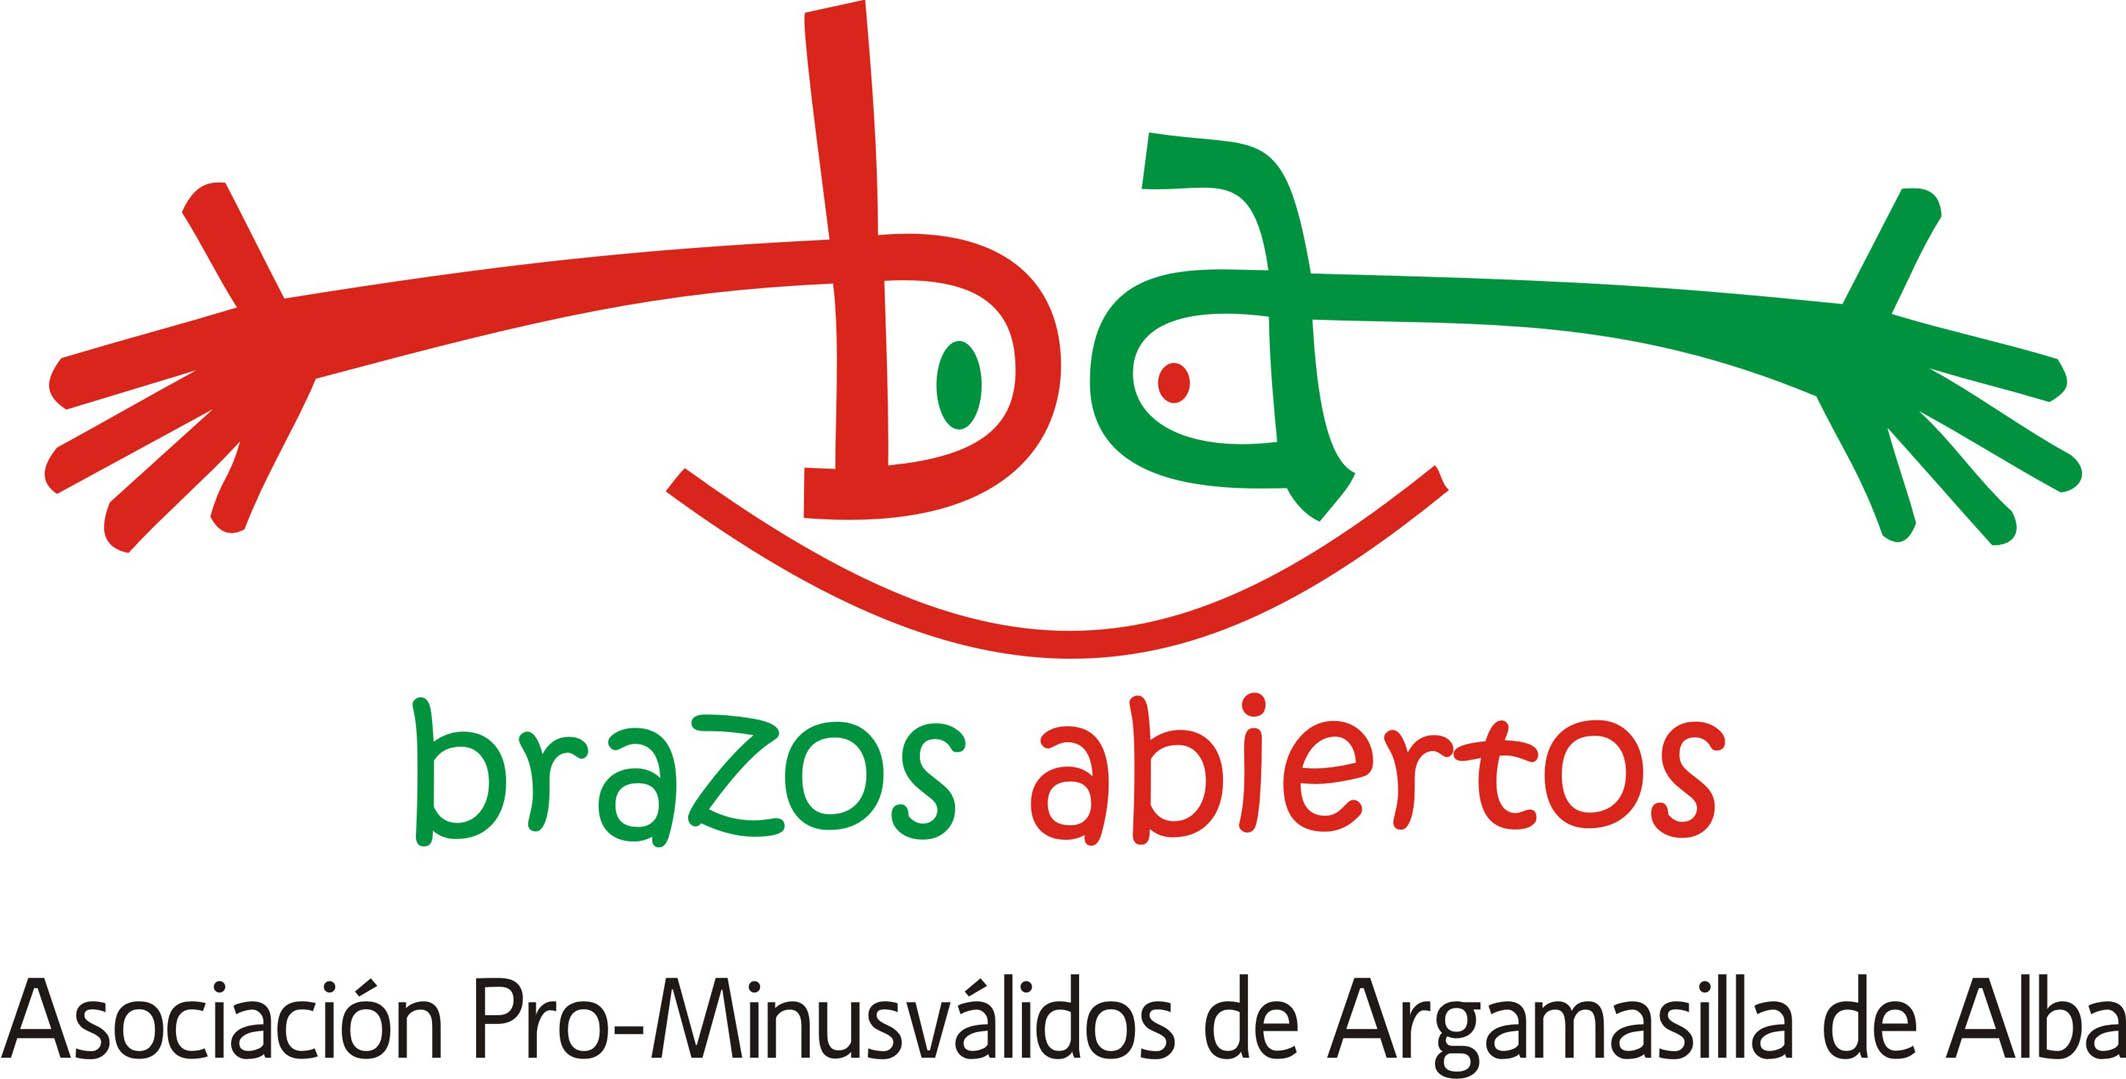 Brazos Logo - La Asociación Pro-Minusválidos 'Brazos Abiertos' tiene nueva imagen ...